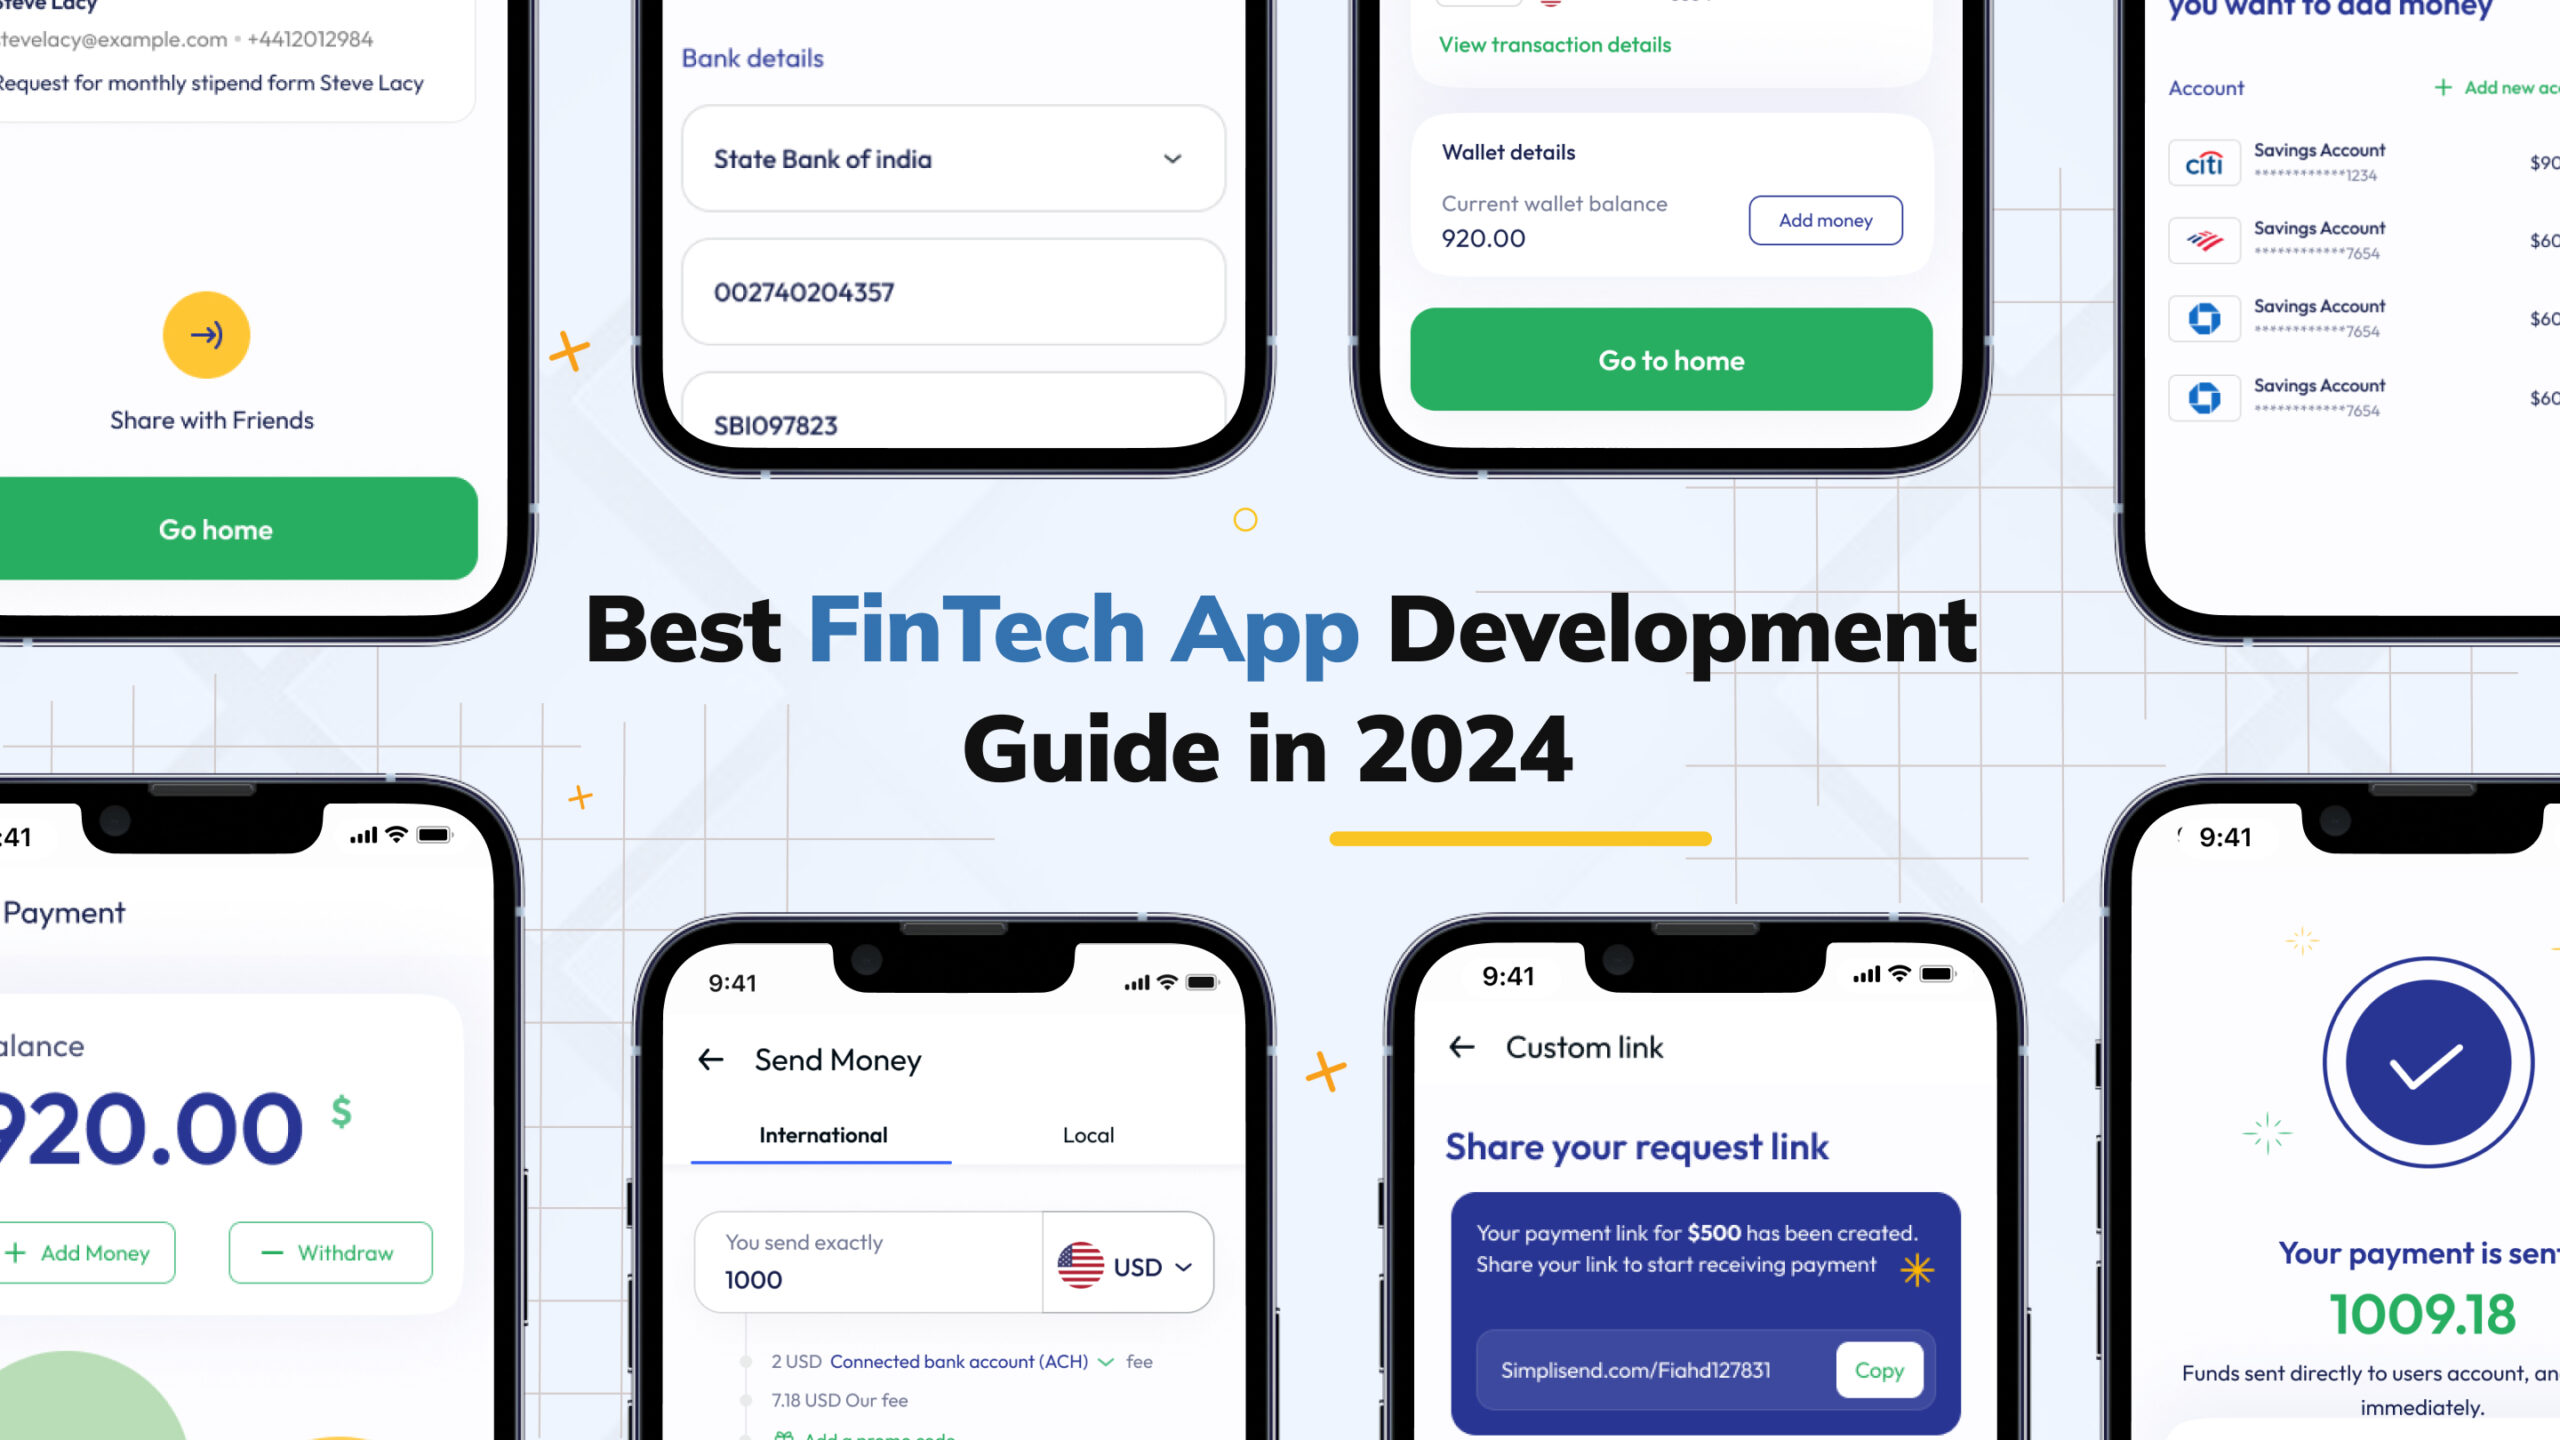 Best FinTech App Development Guide in 2024